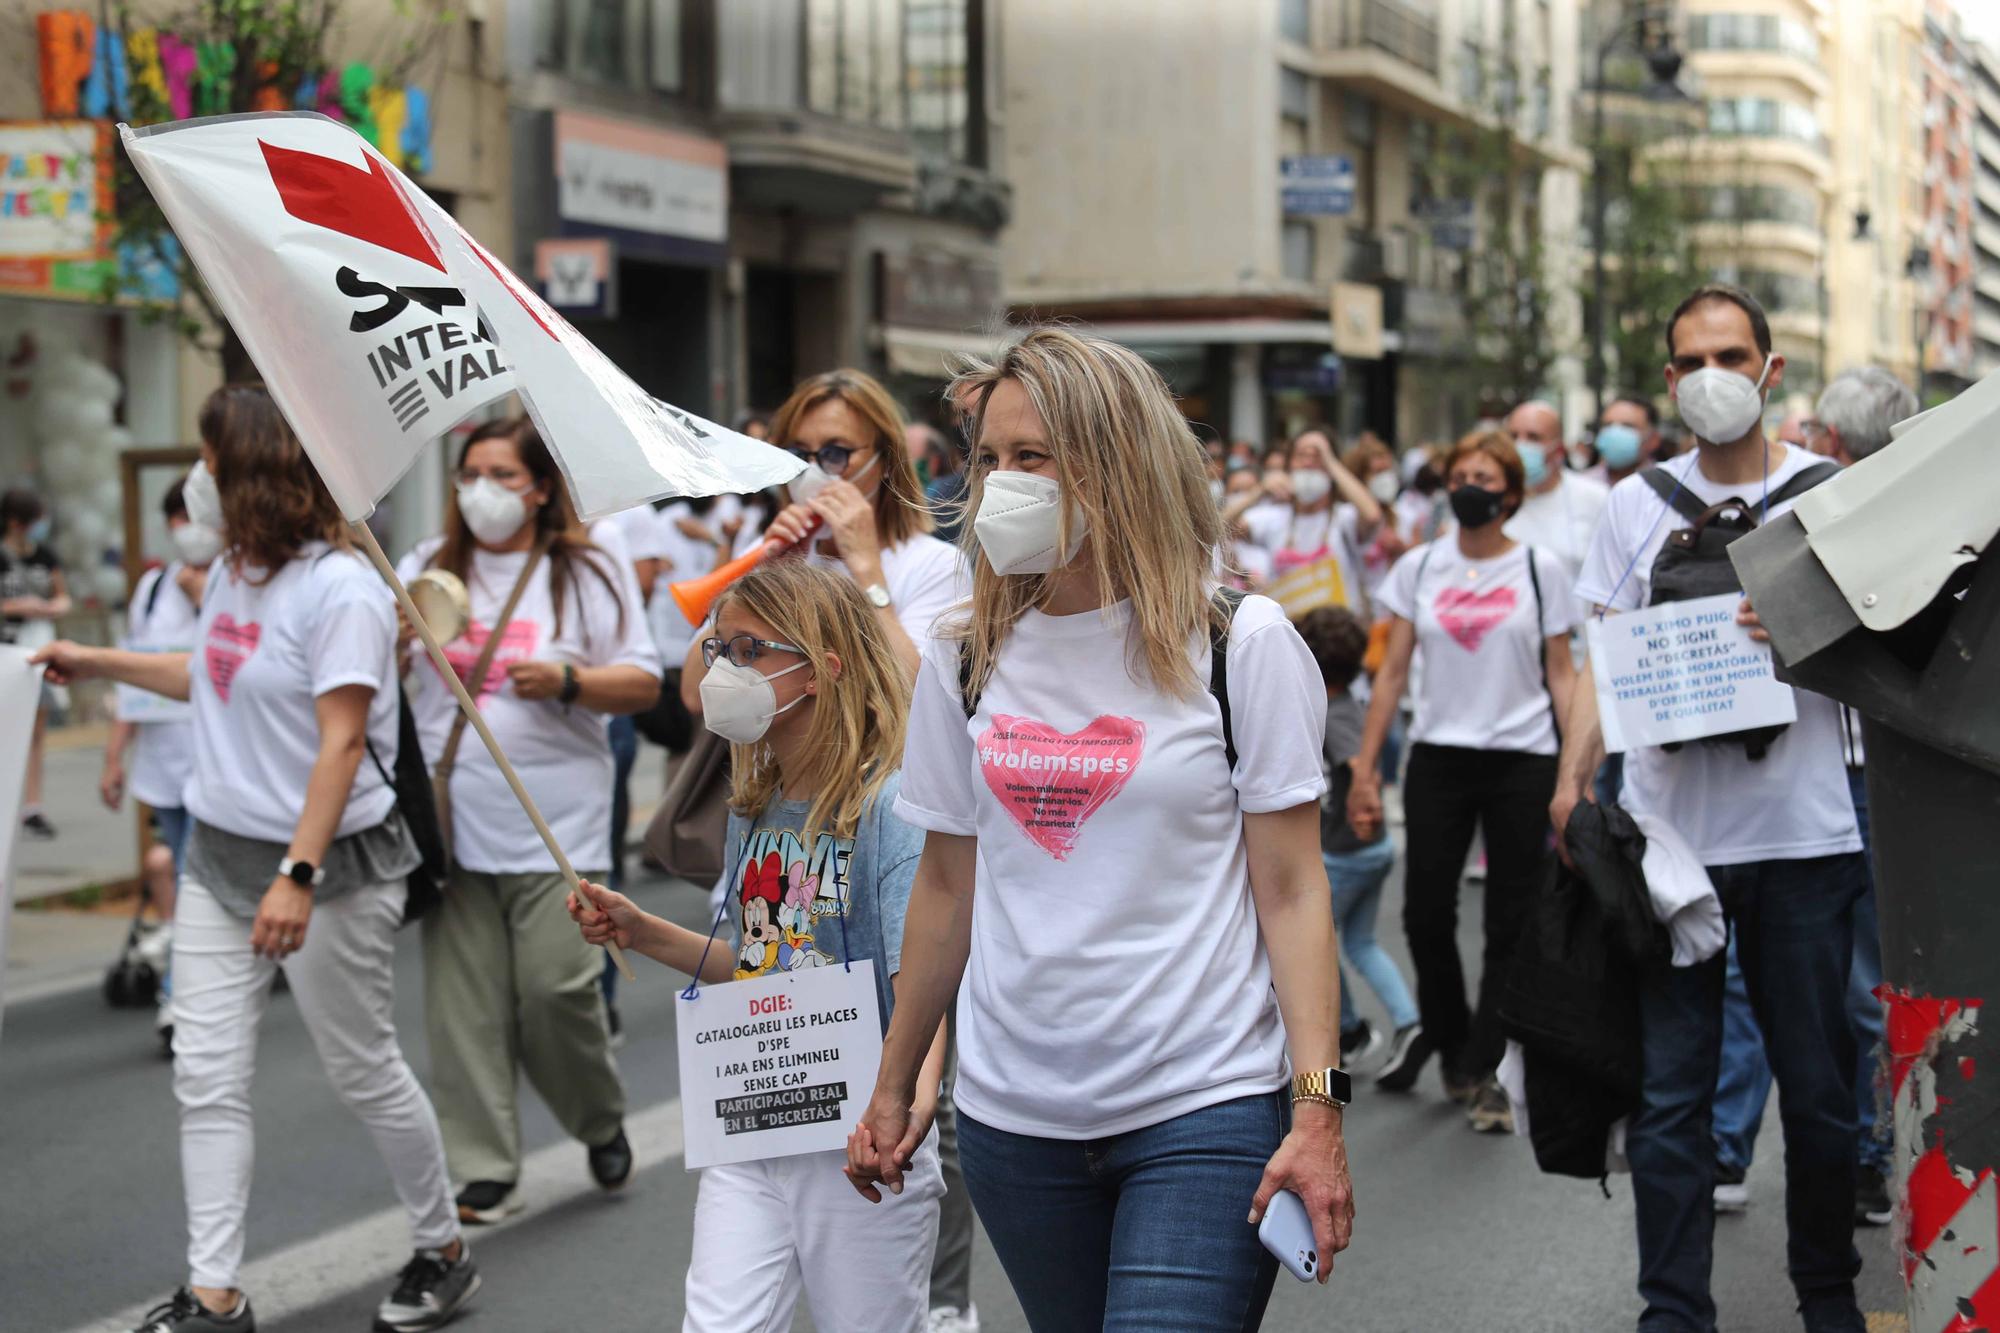 Protesta en València contra el "desmantelamiento" de los SPES y reclama "diálogo" a Educación